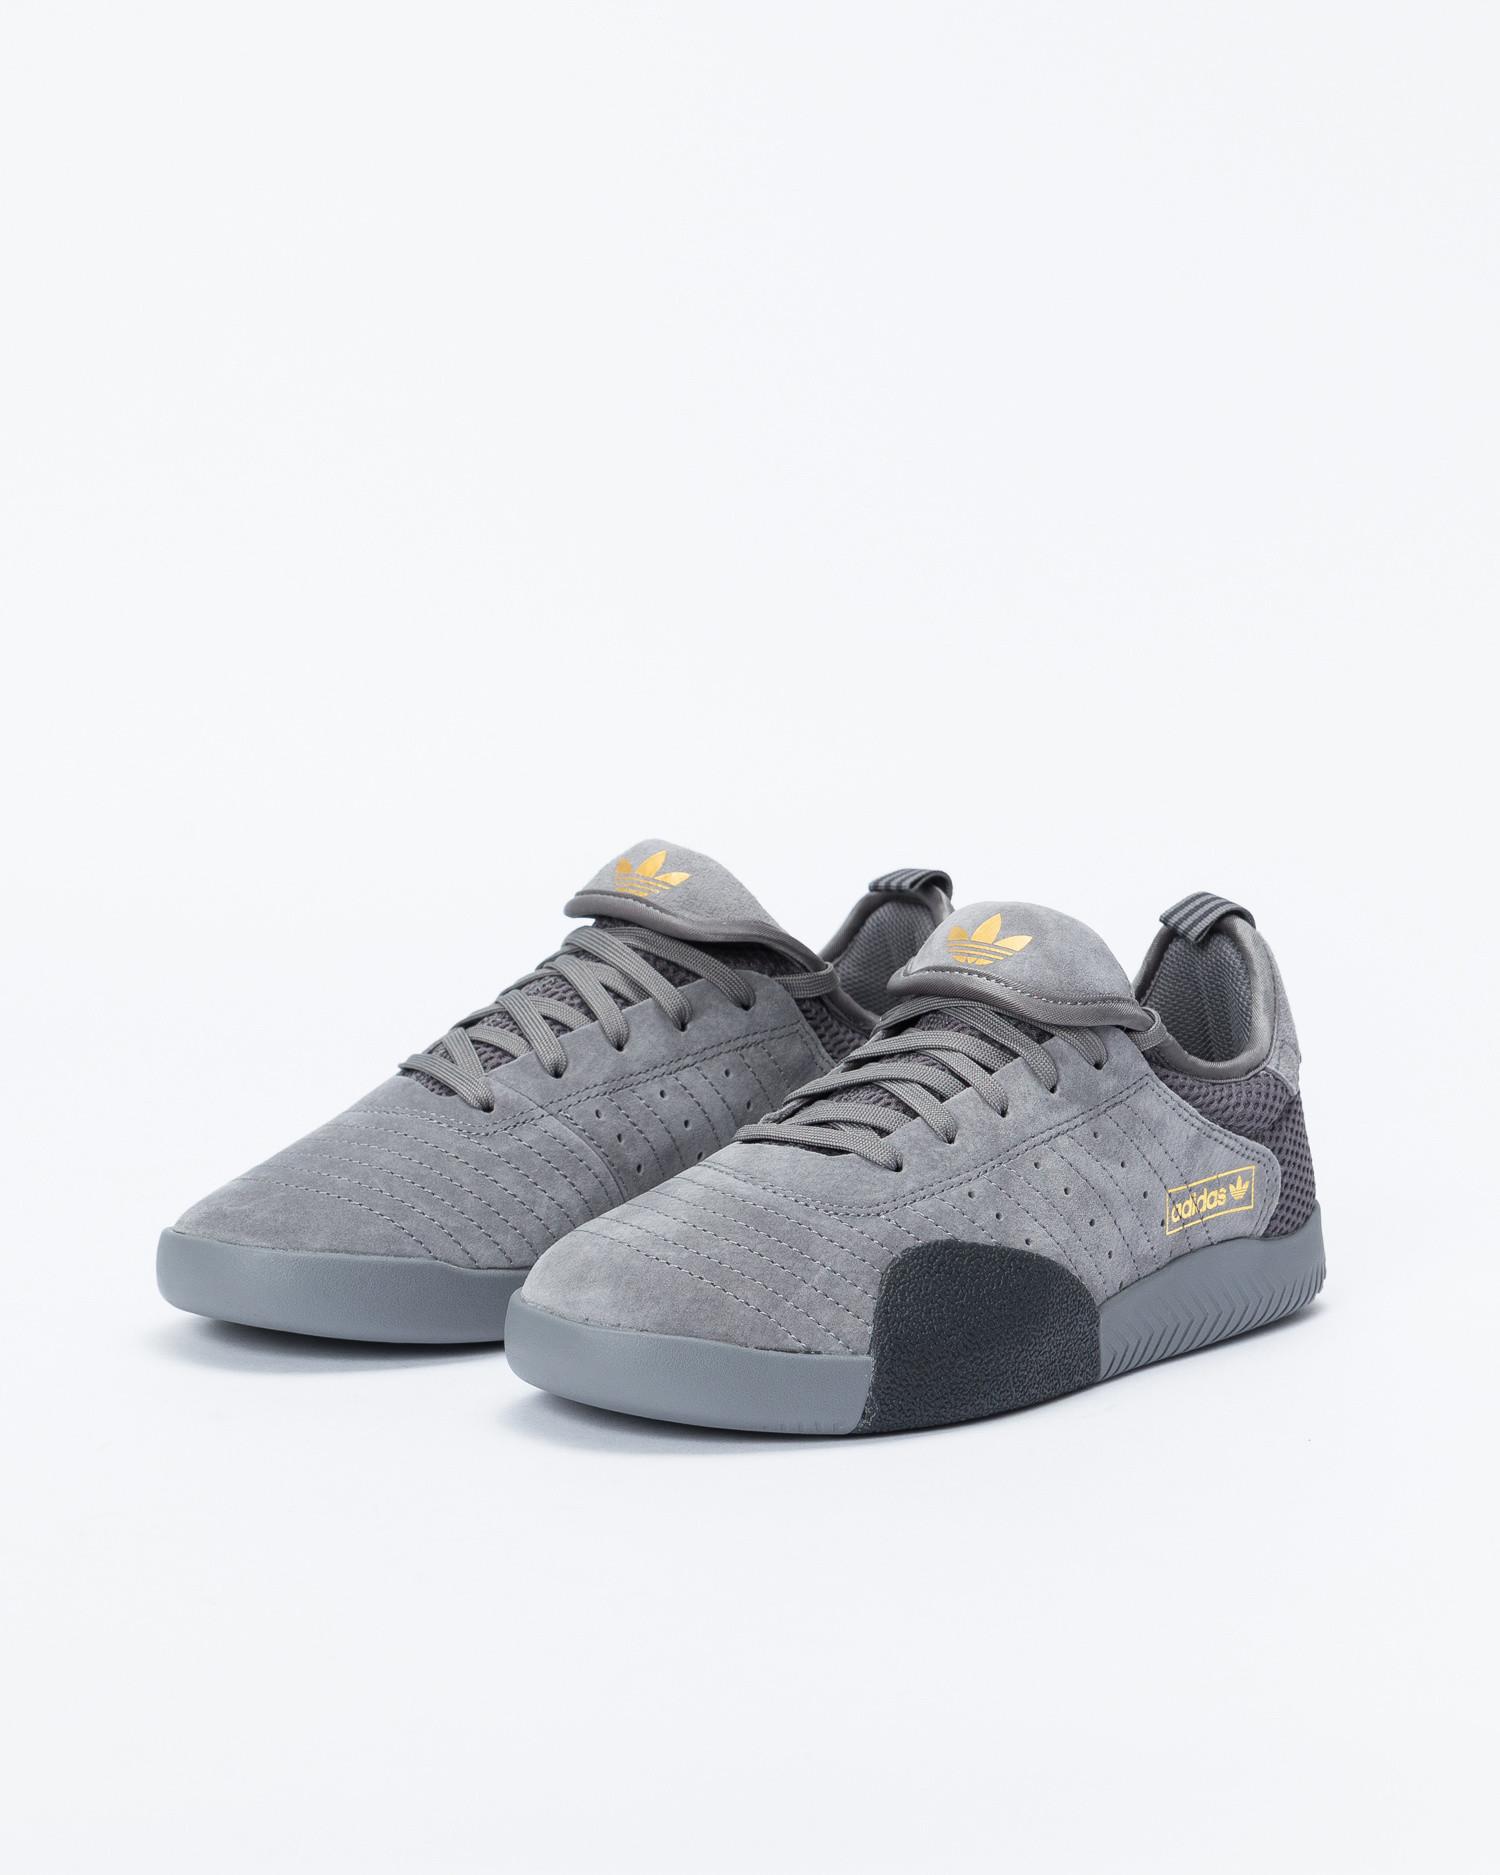 adidas 3st grey